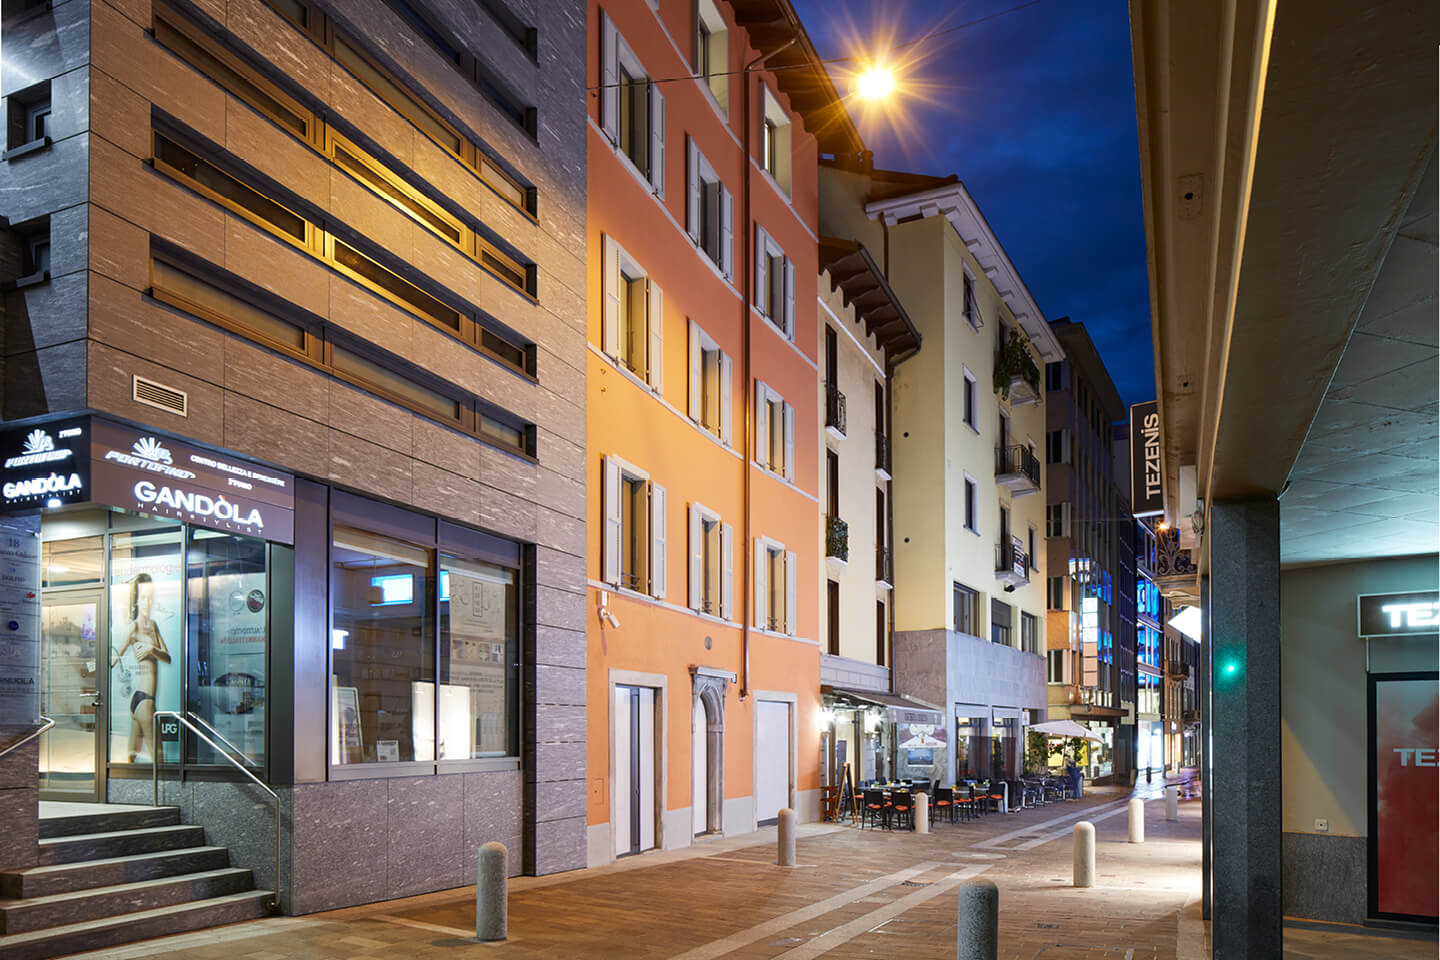 Affittare appartamenti Lugano